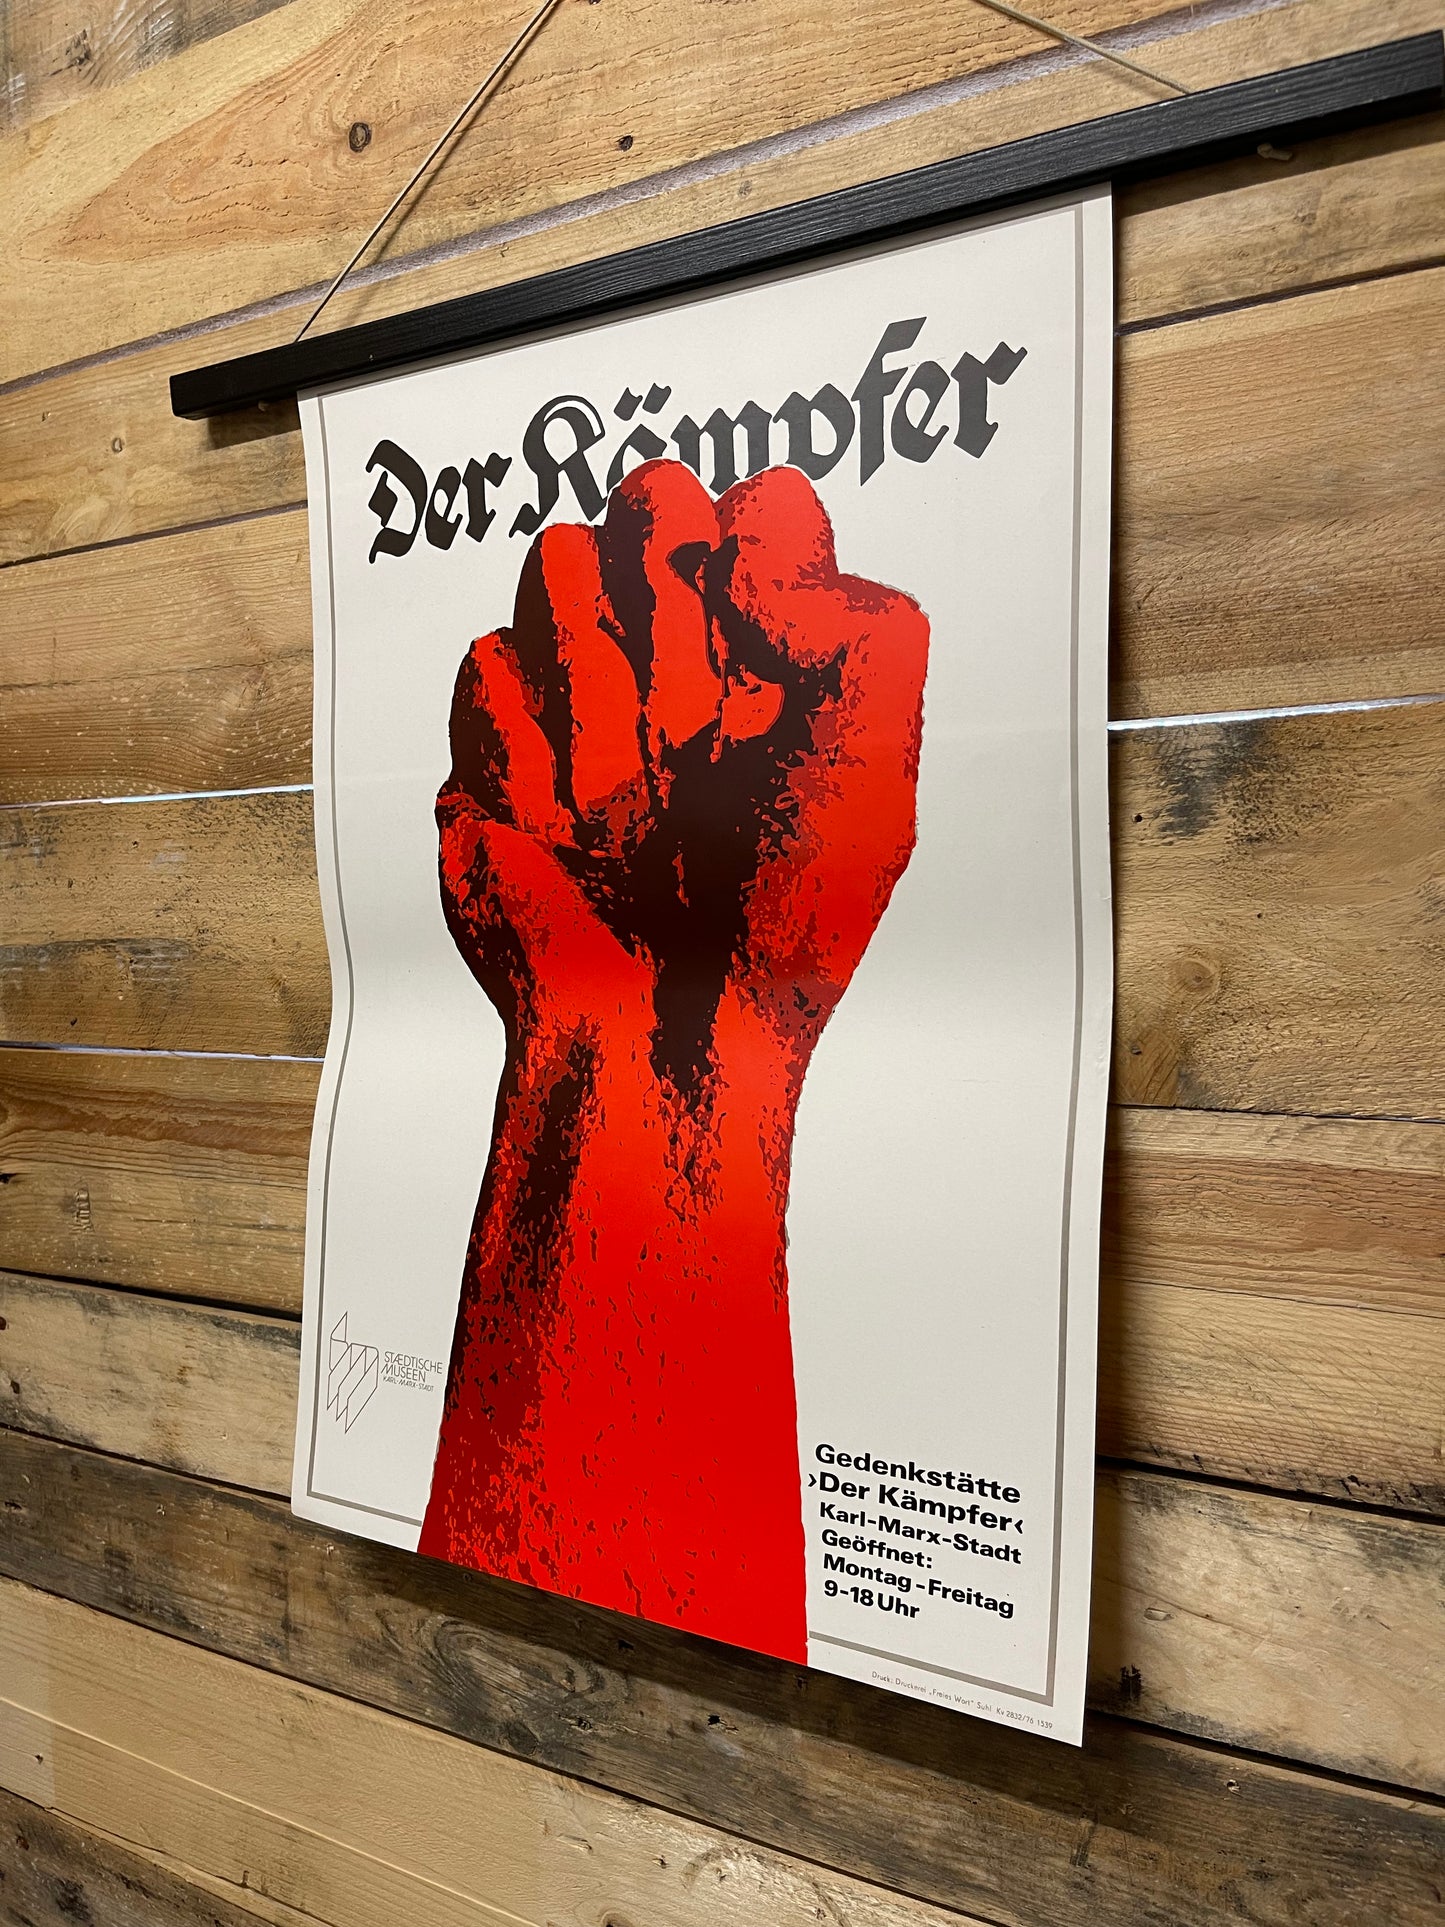 Rare Memorial Of The Fighter DDR Propaganda Poster 1976